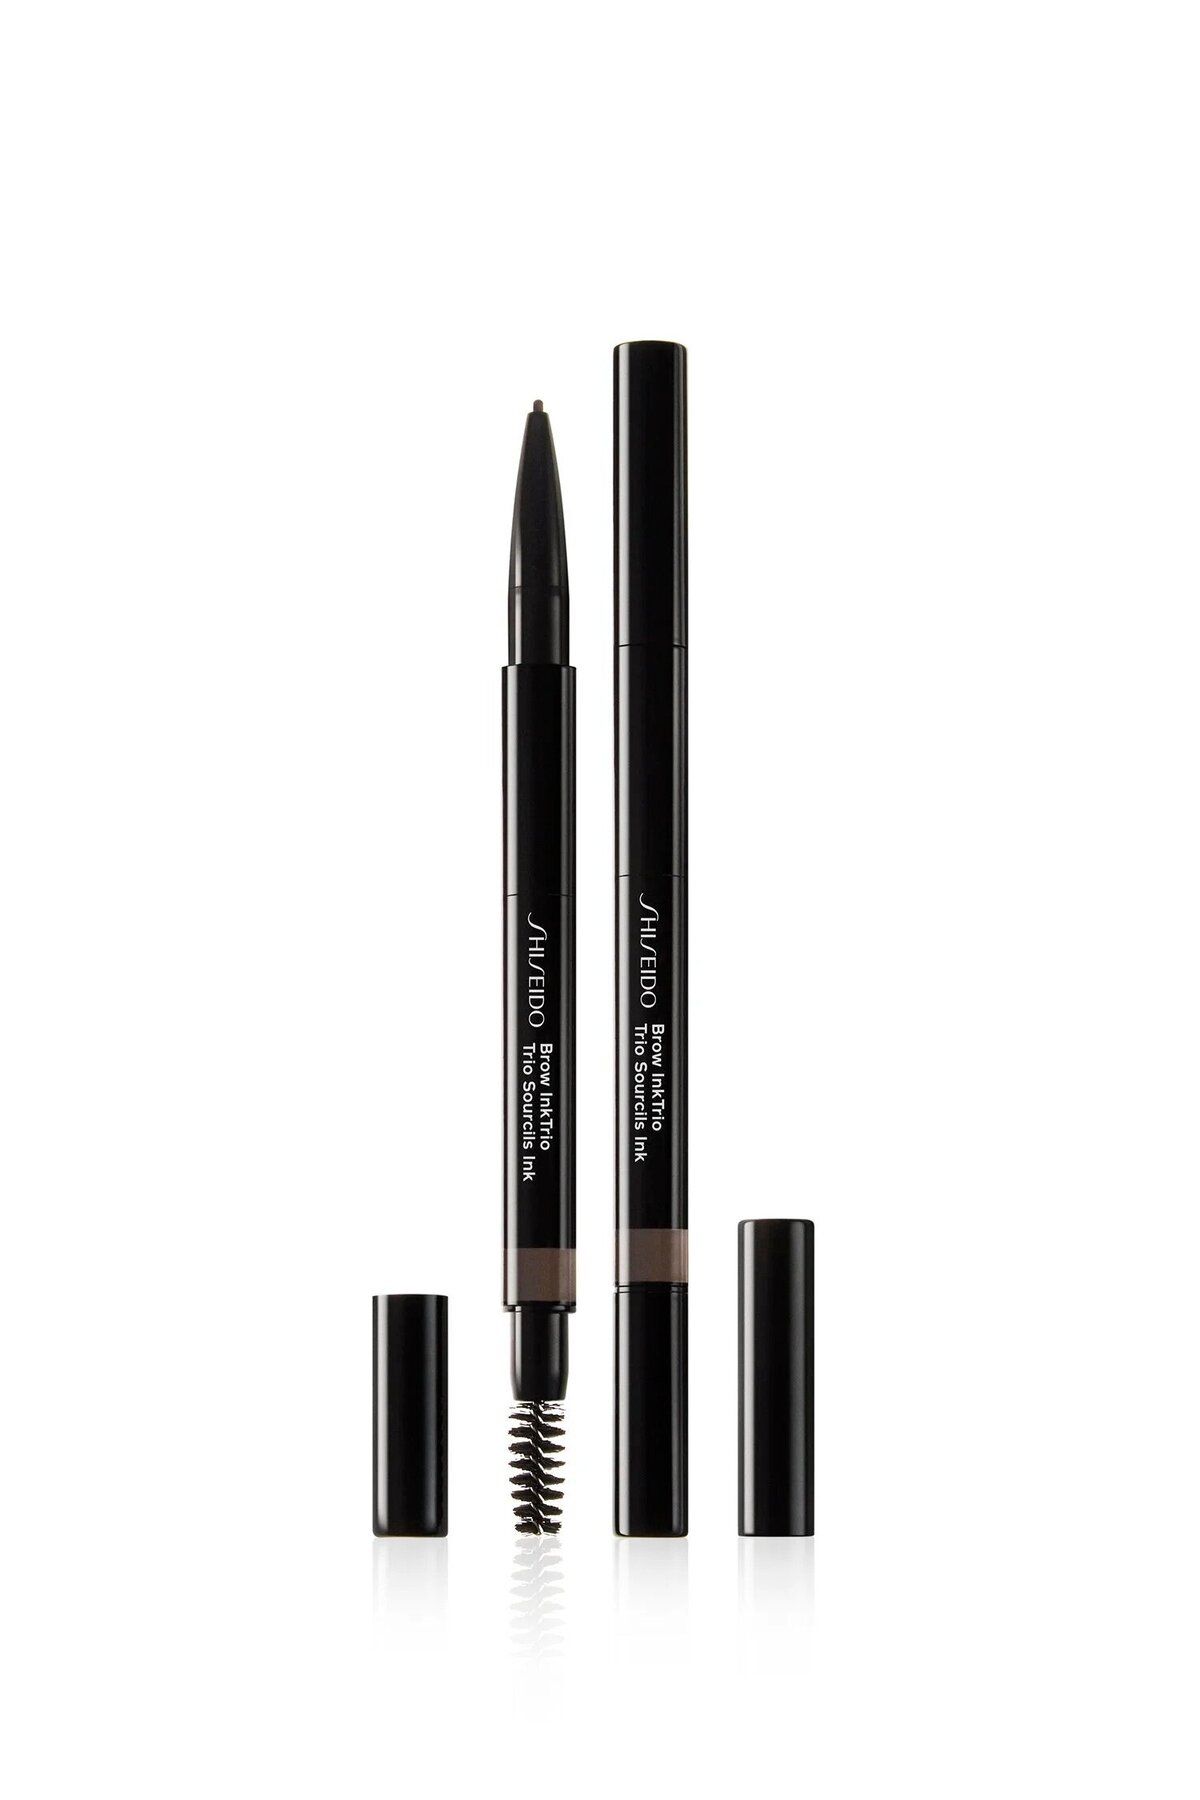 Shiseido Brow InkTrio 04 - Kaşları Doldurmak, Şekillendirmek İçin Tasarlanmış 3'ü Bir Arada Kaş Kalemi 0,6 gr